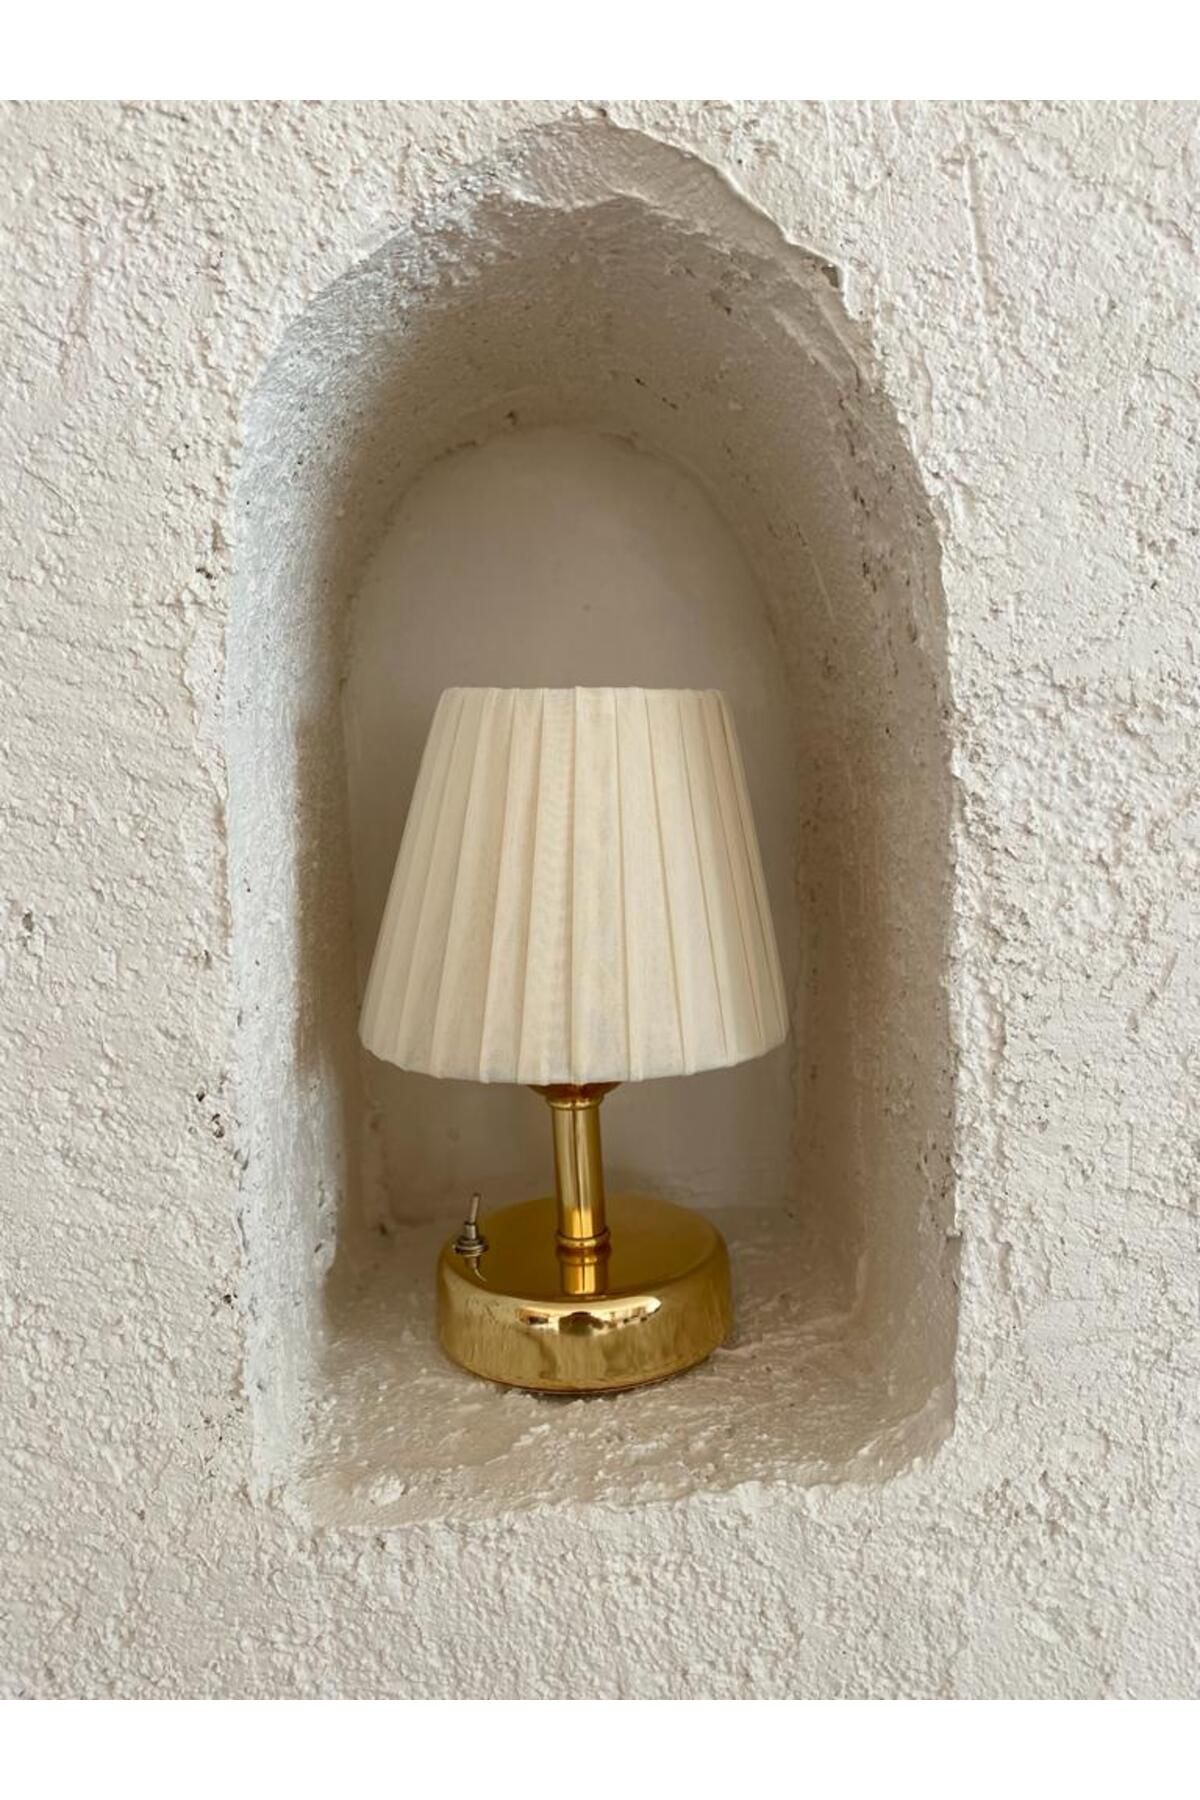 Maison Avf Osmanlı İpeği Pileli Kablosuz Masa Lambası -Alt Parlak Gold Led Işık ( 9v Pil 75-90 Saat)